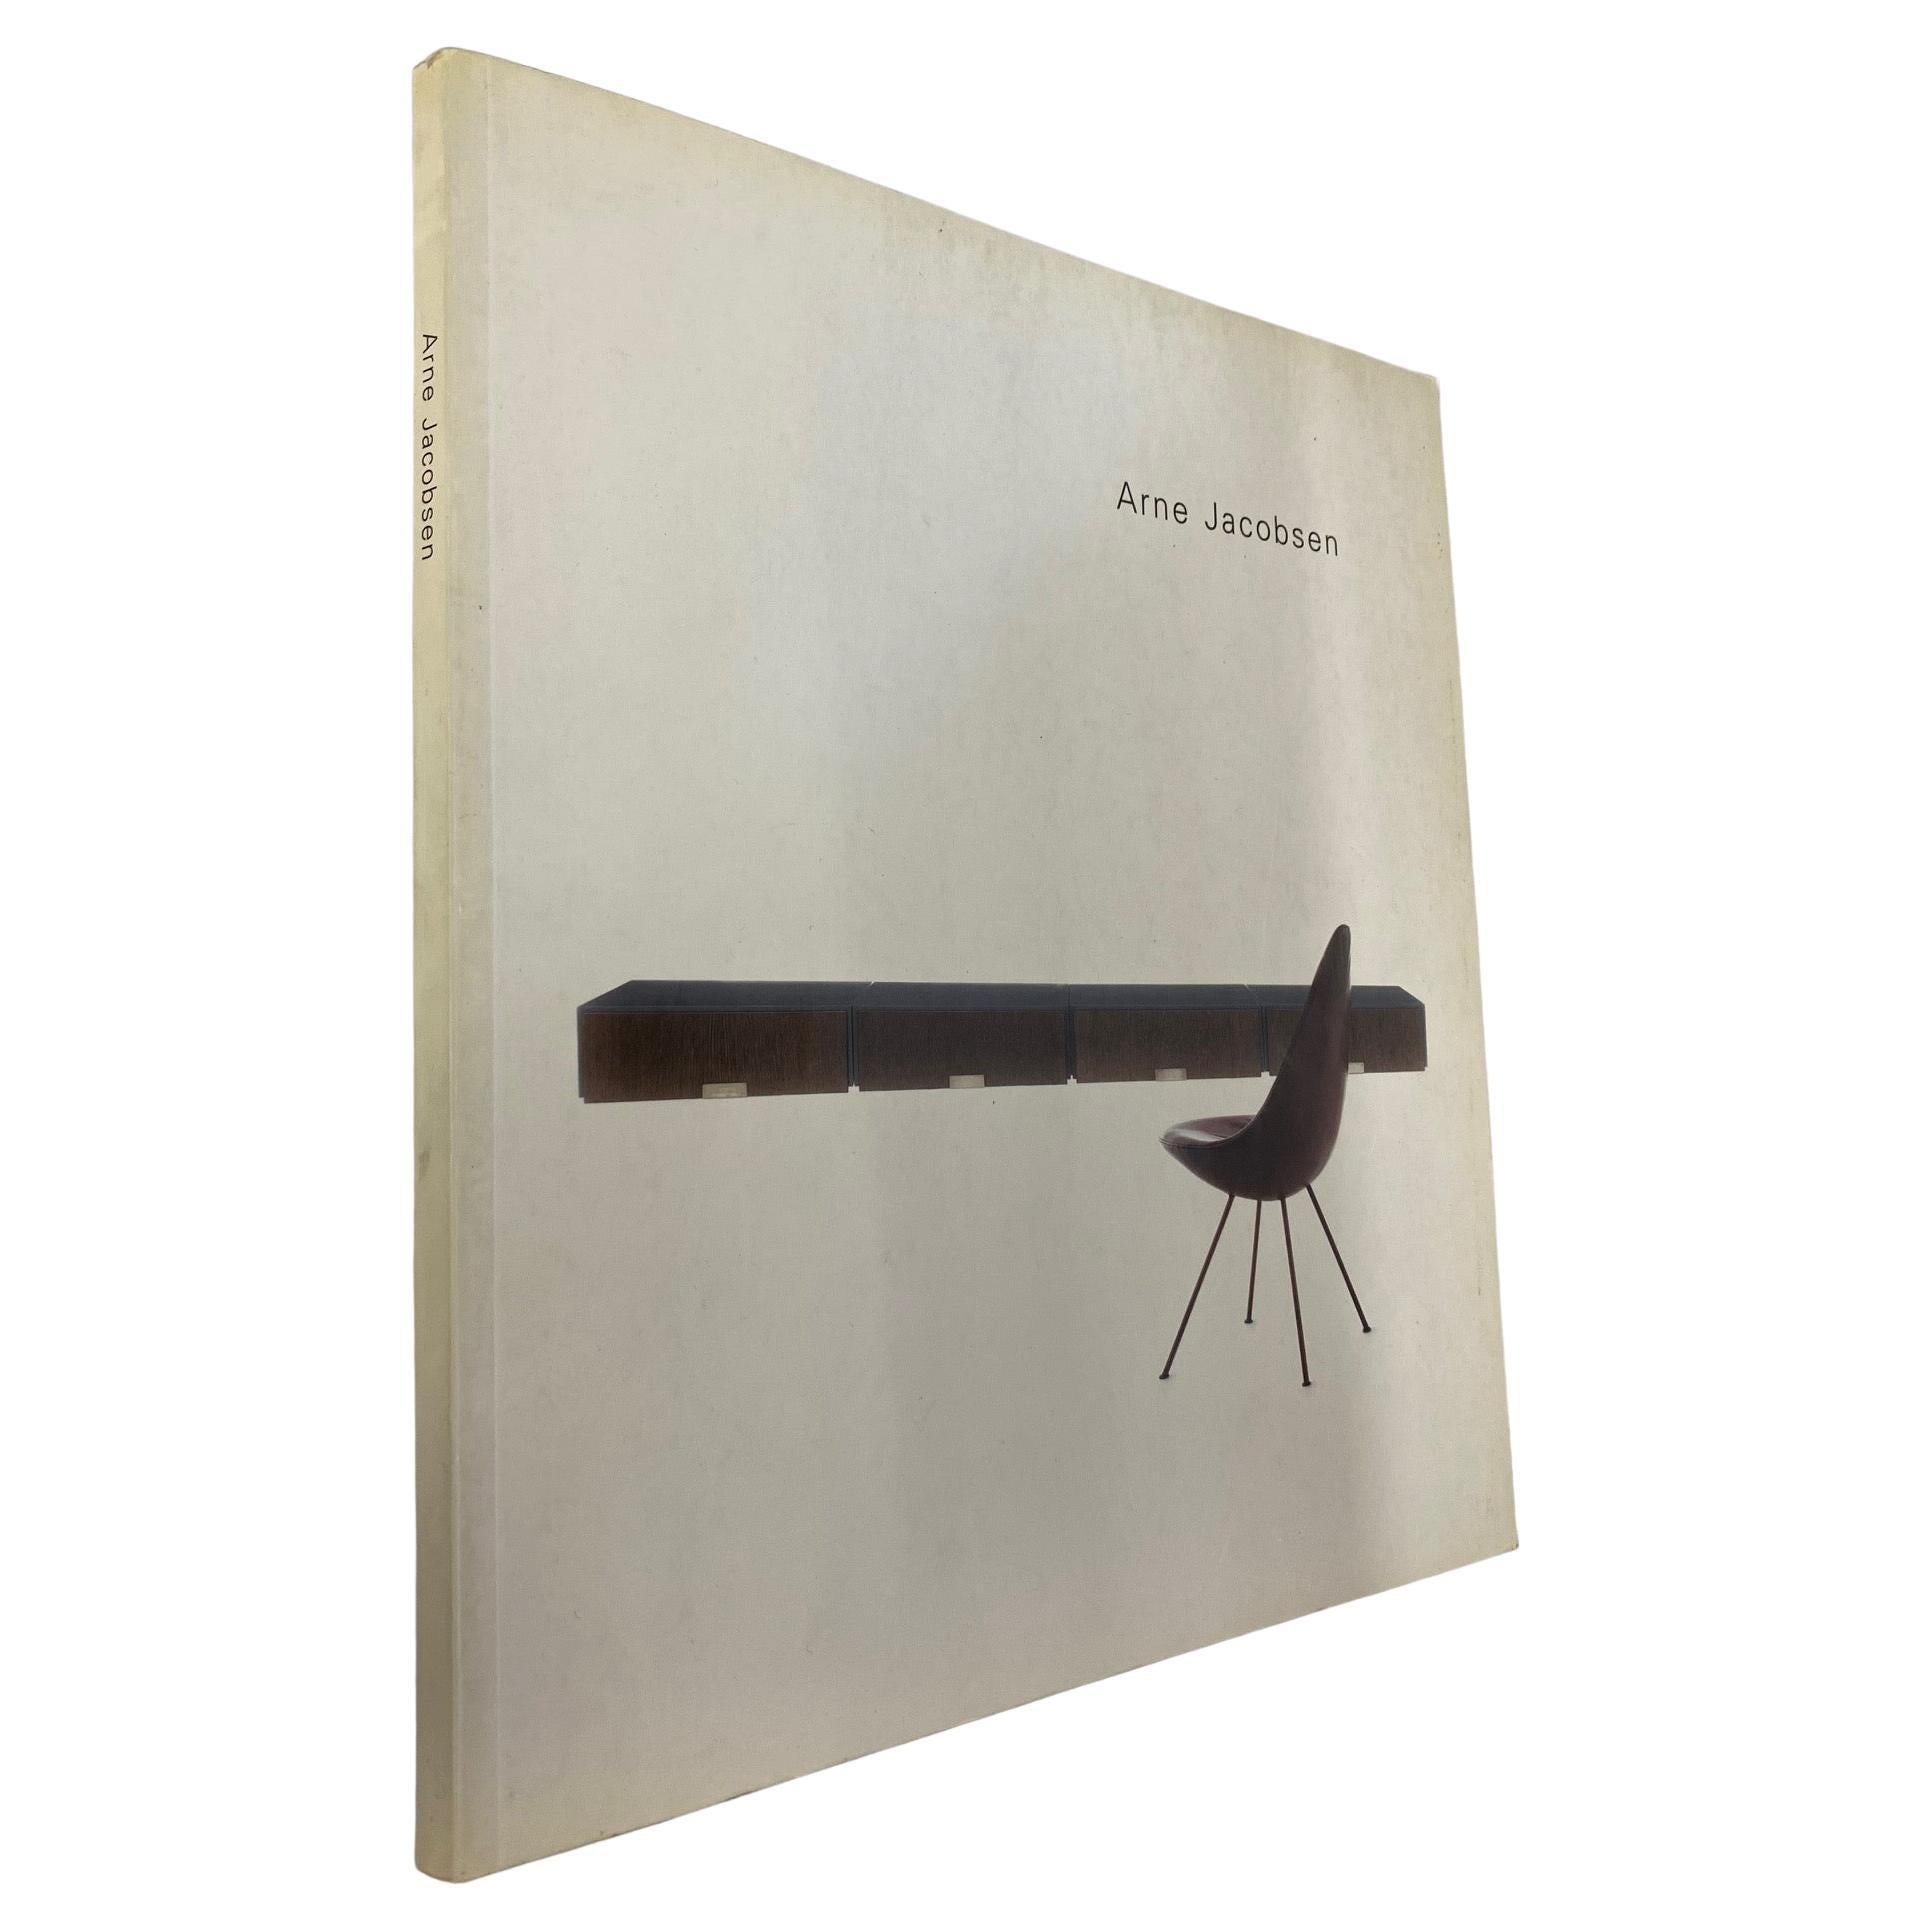 Arne Jacobsen (Book)